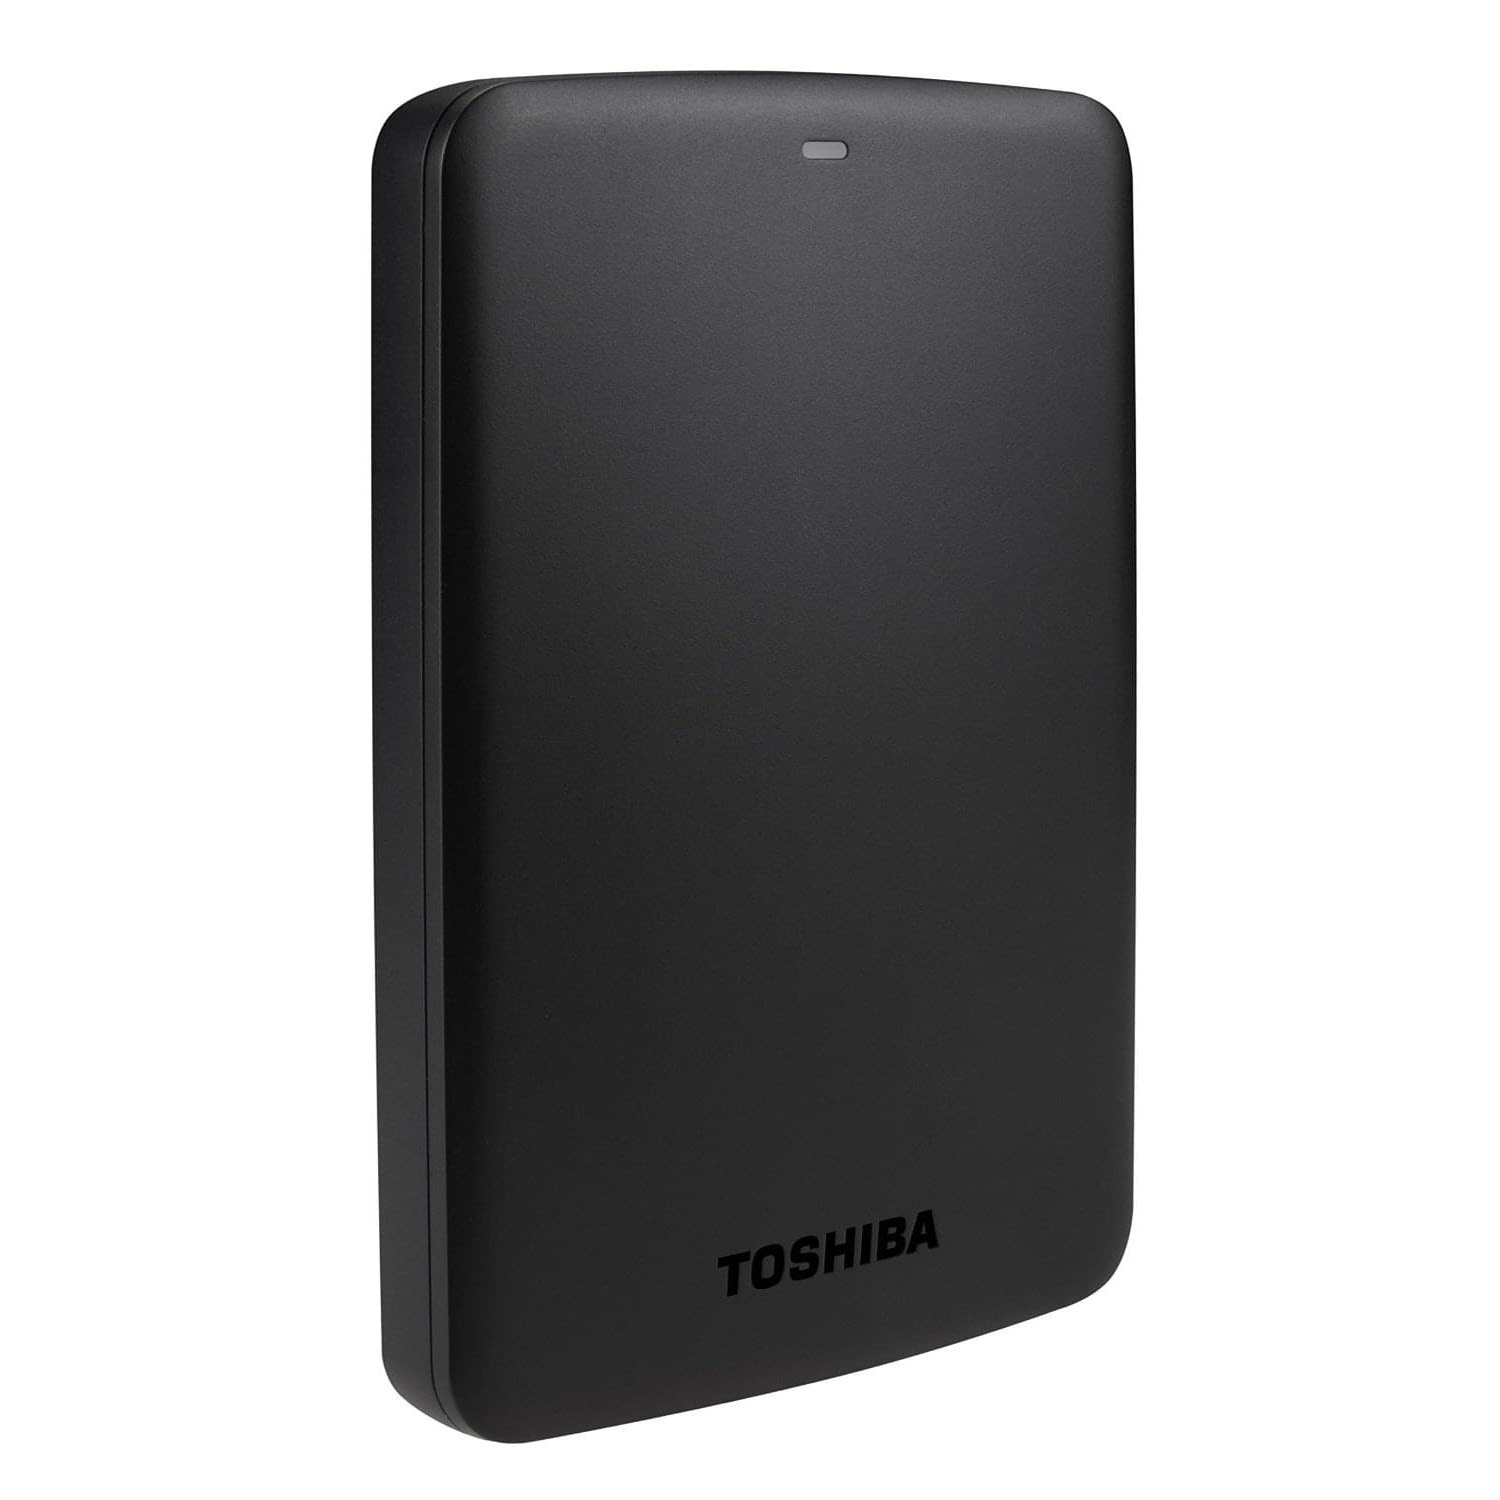 Disque dur externe Toshiba 2To 2"1/2 USB3.0 Noir - Canvio Basics - HDTB320EK3